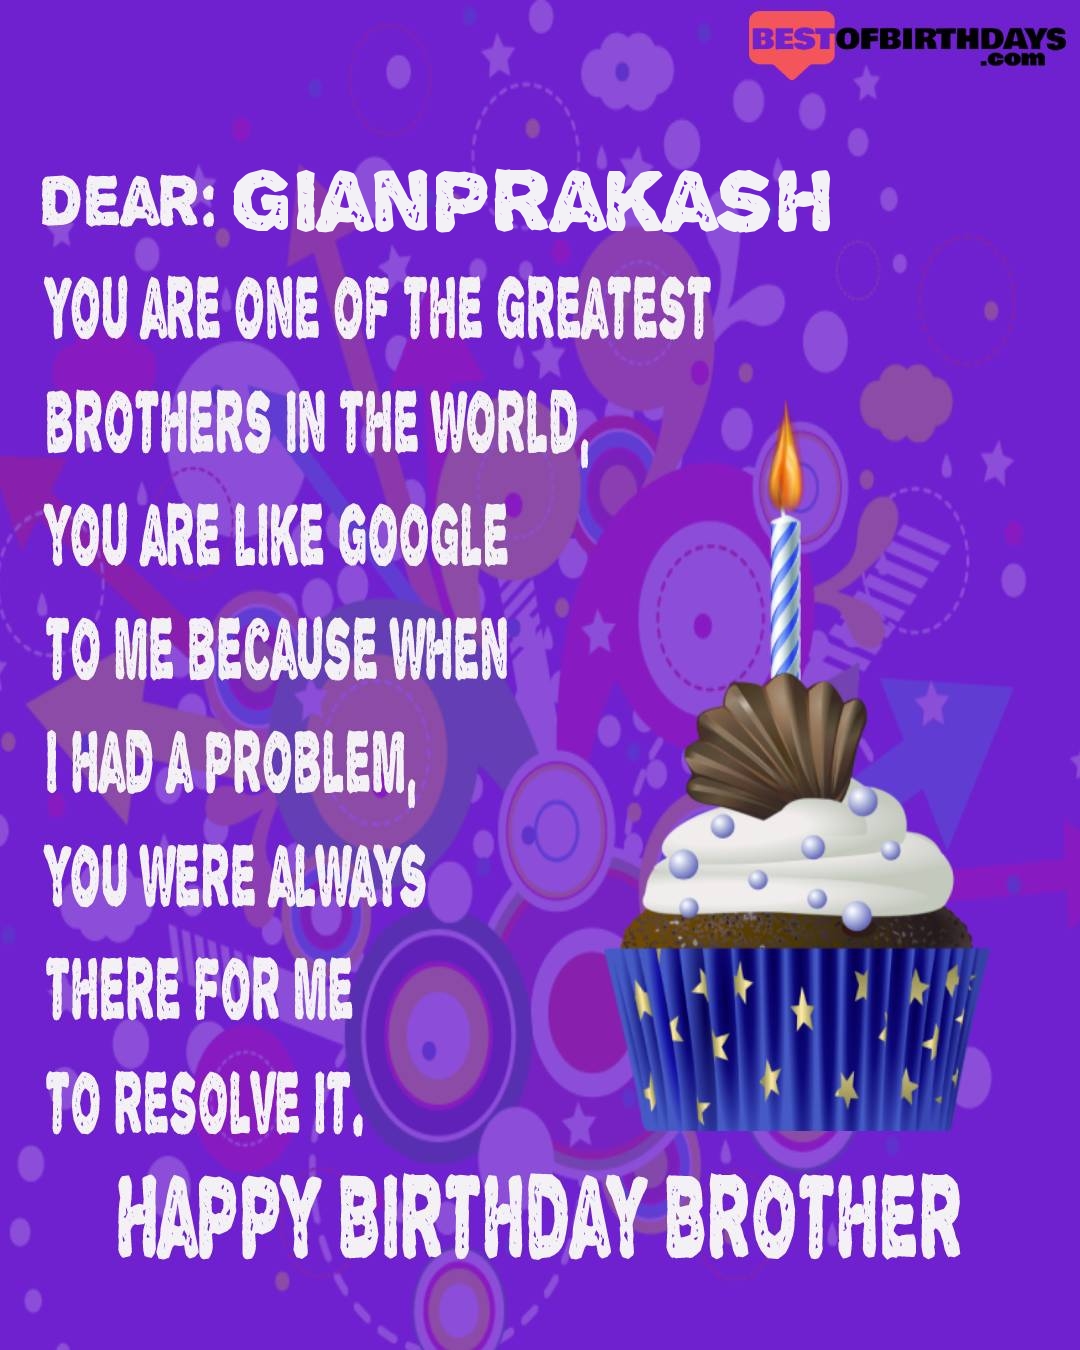 Happy birthday gianprakash bhai brother bro